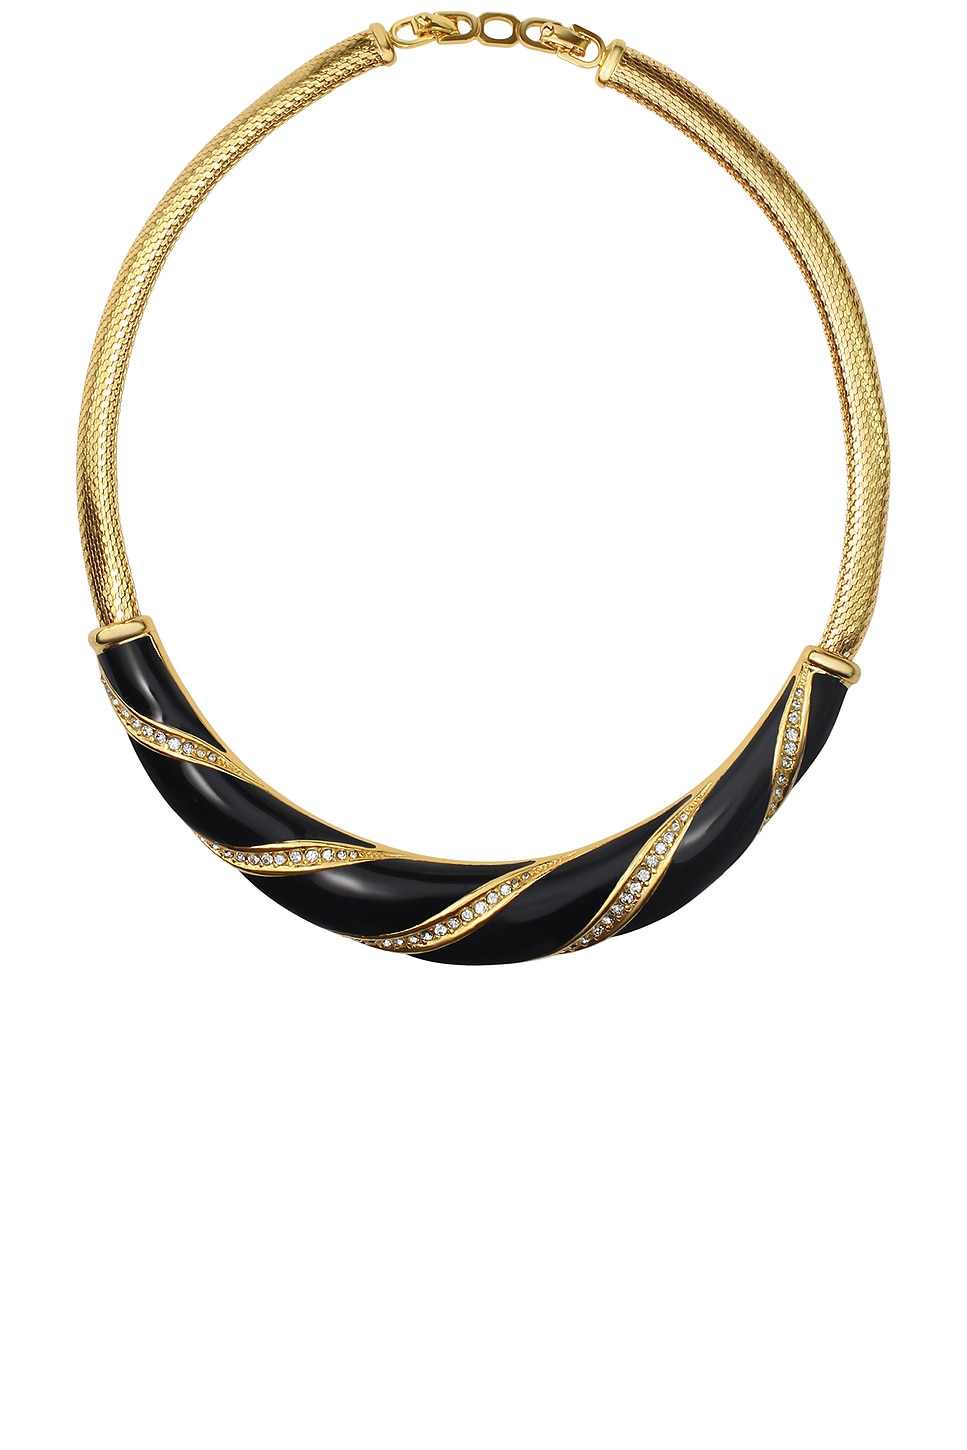 Image 1 of 23CARAT Vintage Christian Dior Enamel Crystal Tubogas Necklace in Gold Tone